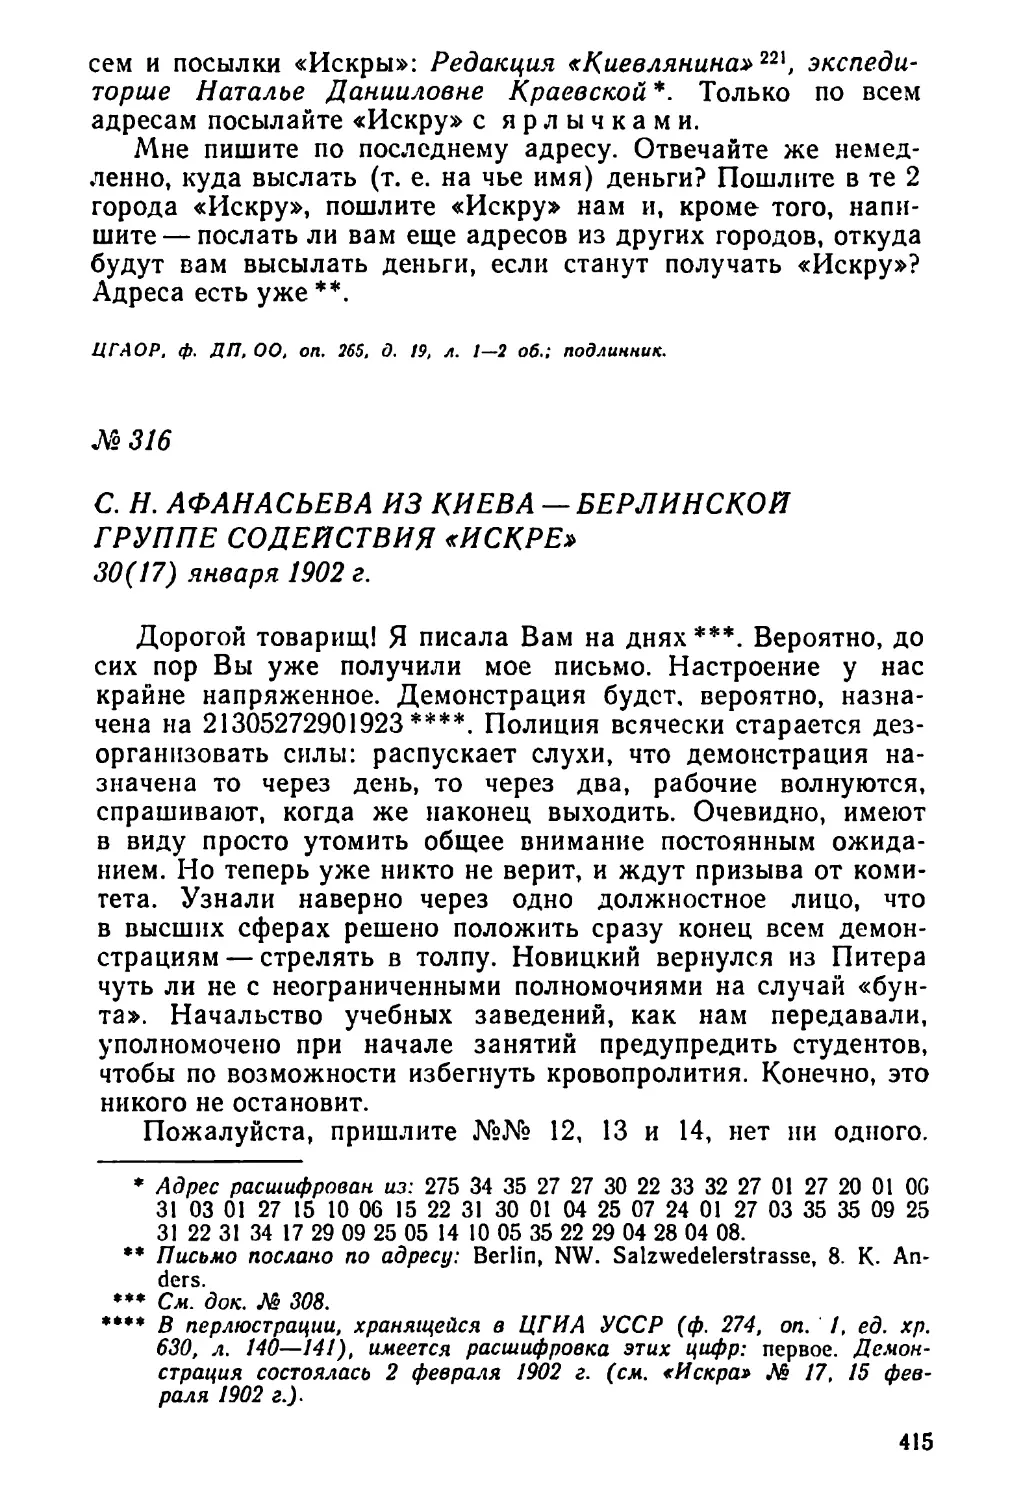 № 316 C. H. Афанасьева из Киева — Берлинской группе содействия «Искре». 30 января